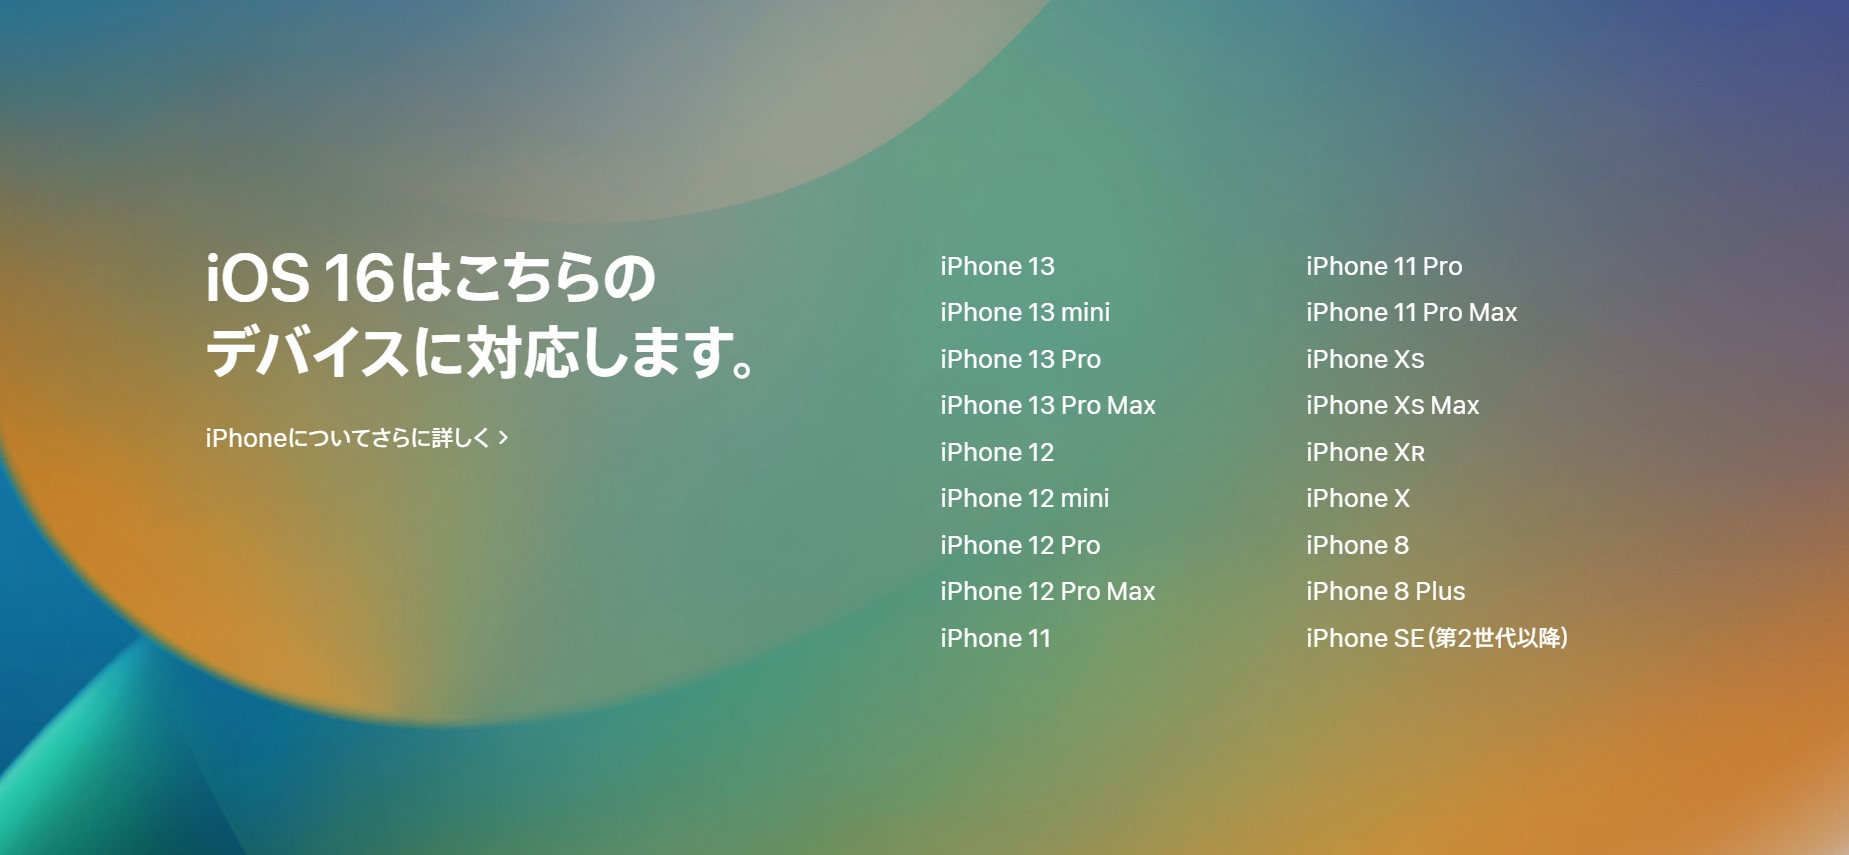 iOS 16対応端末